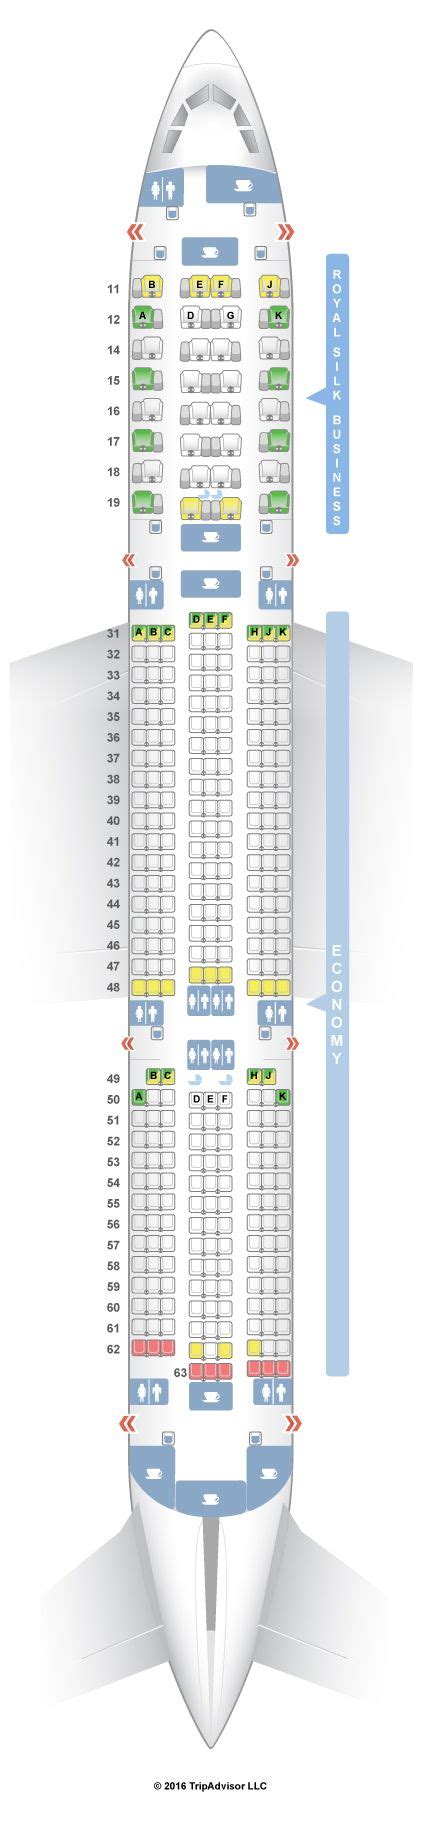 Seatguru Seat Map Thai Airbus A Seatguru Seating Charts Seating Plan